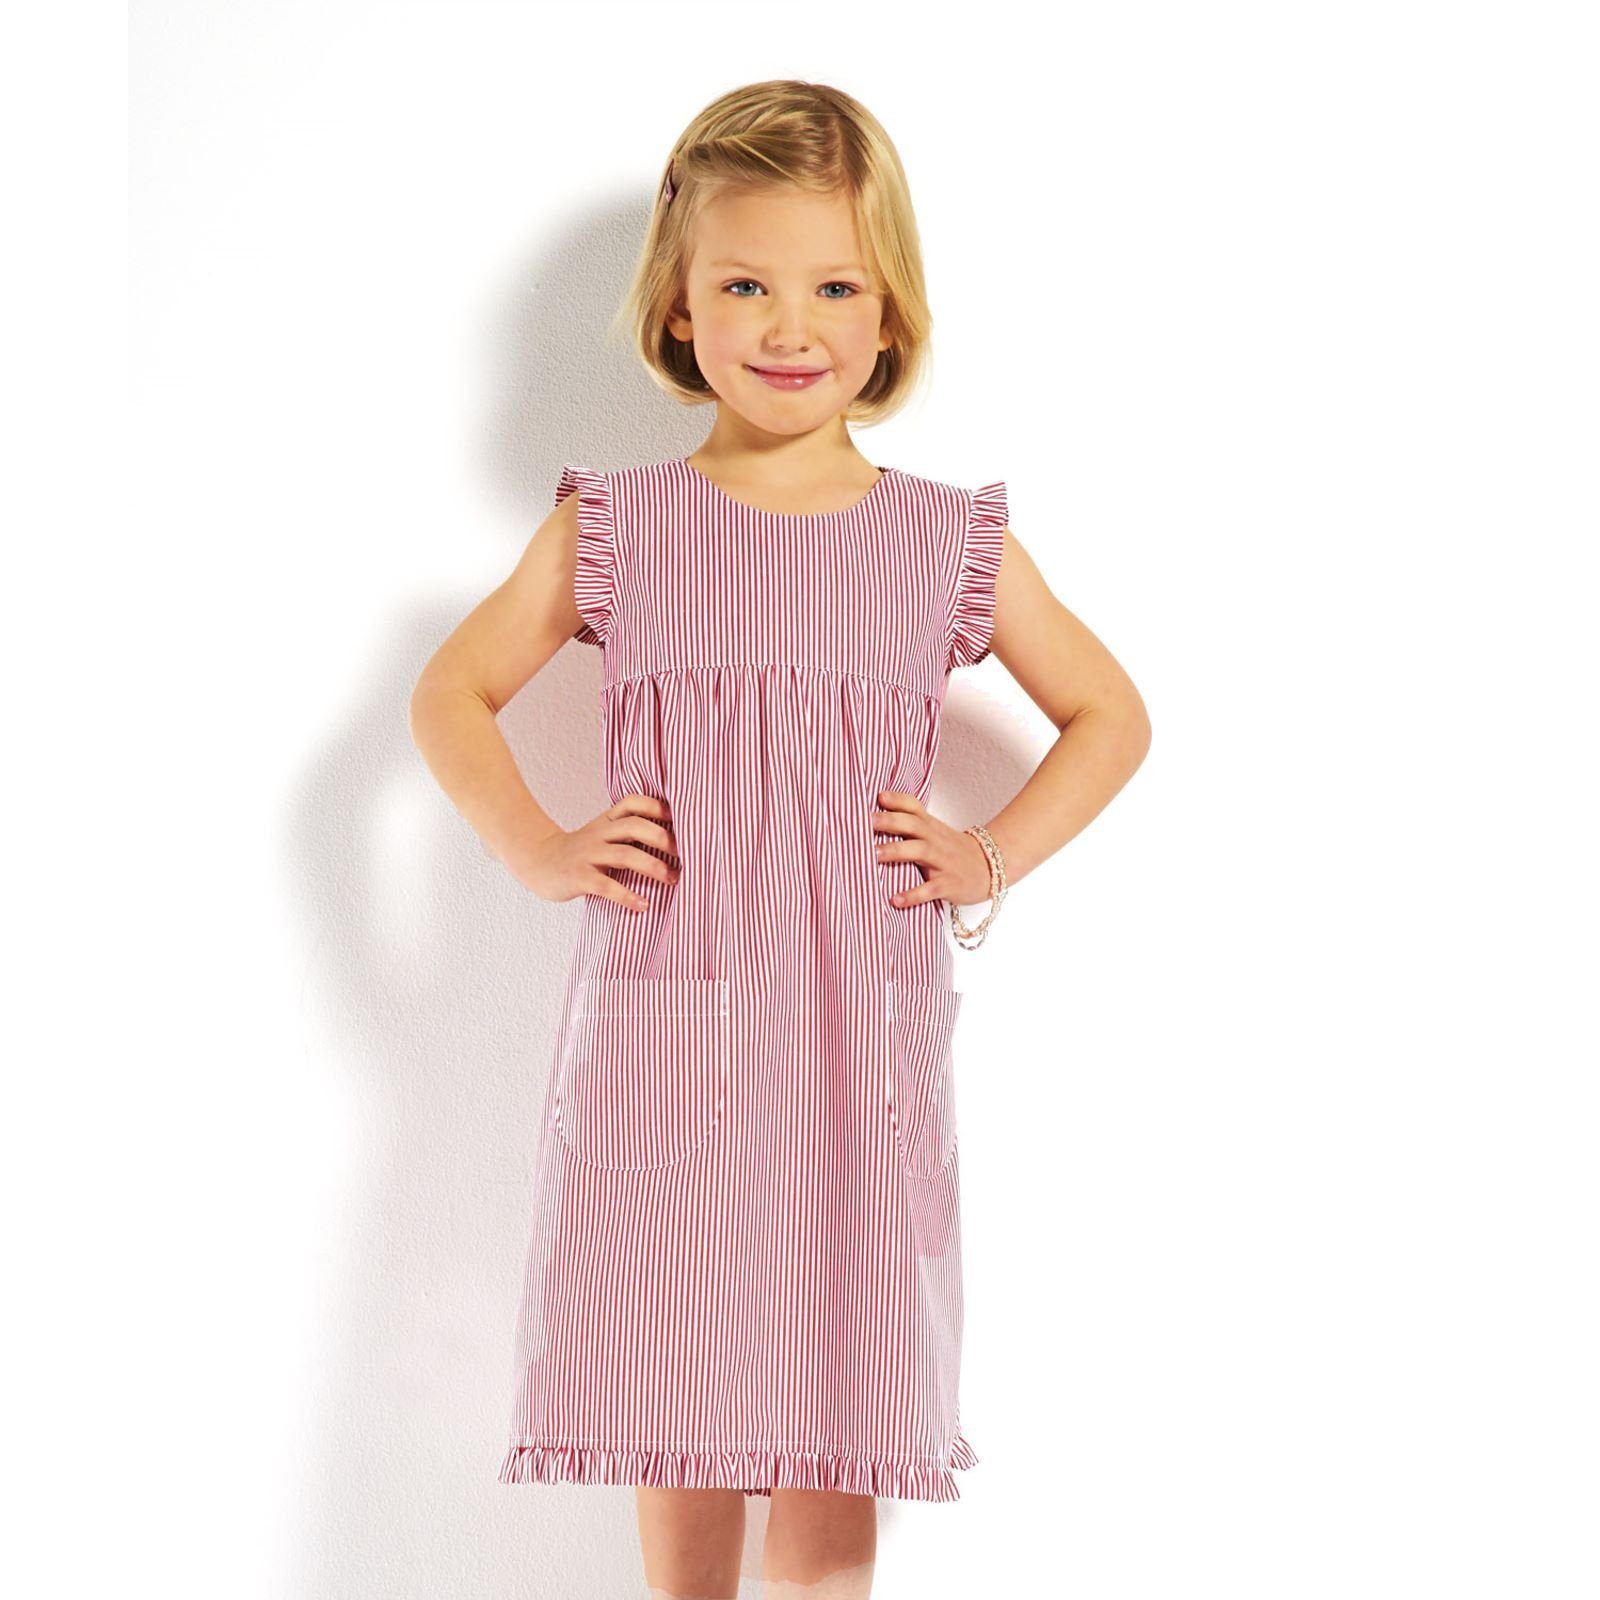 mit - mit rot/weiß gestreift Kleid (023) Kinder Streifen Mädchenkleid gestreift modAS Sommerkleid Rüschen